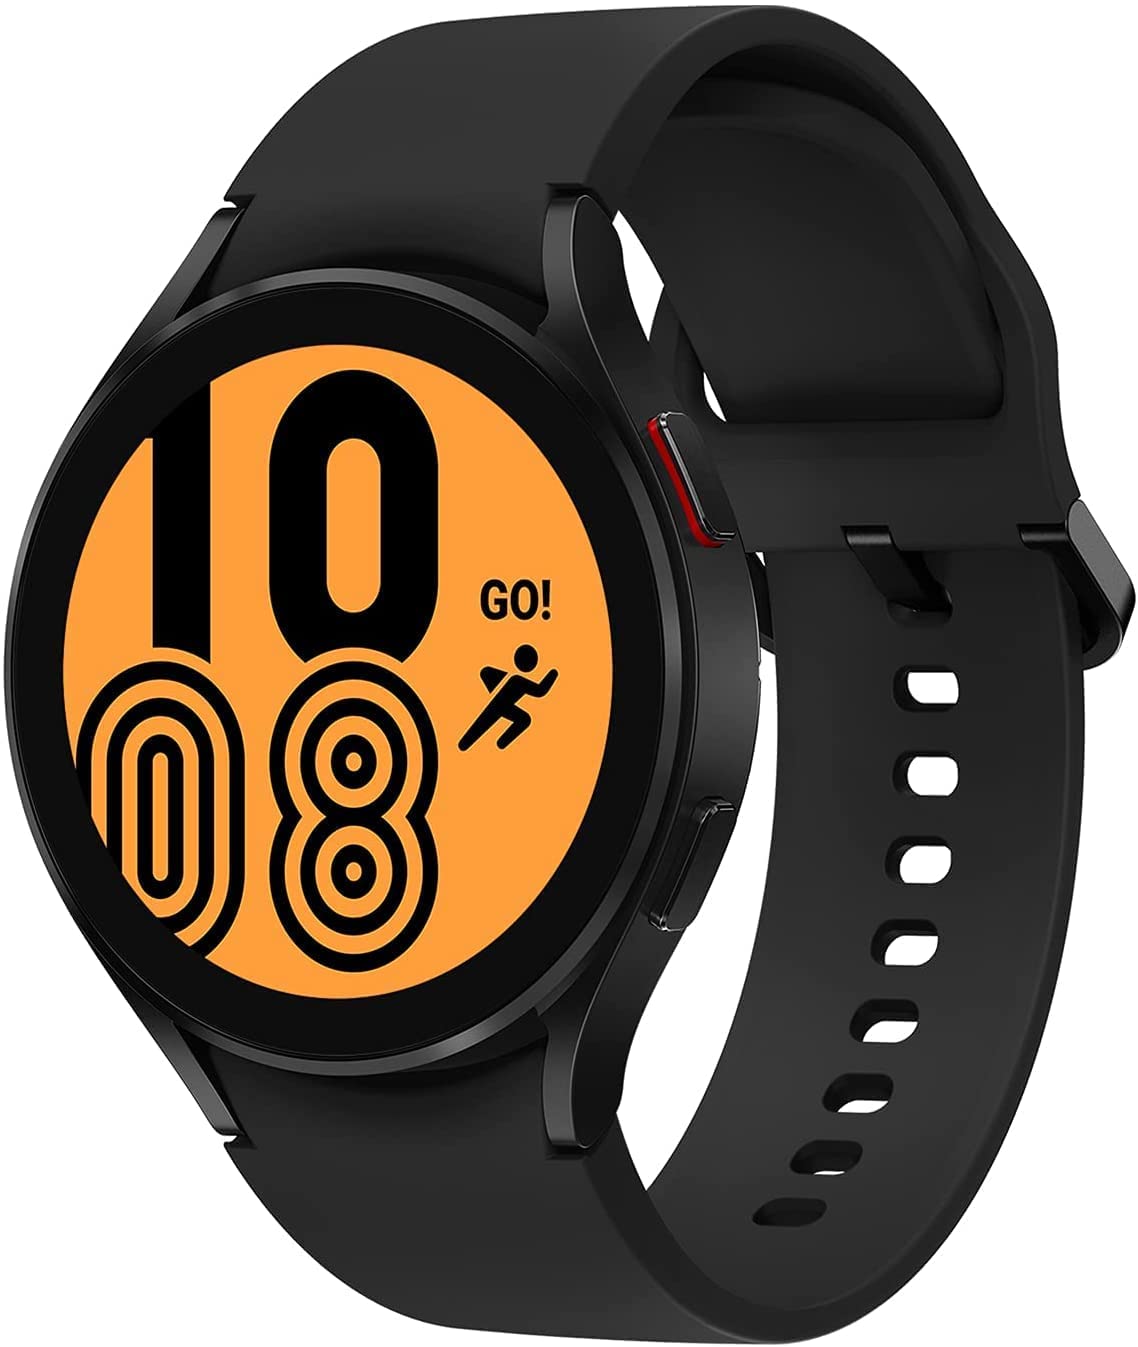 
                                    
                                Prime Day 2022 smartwatch e orologi: le migliori offerte su Amazon